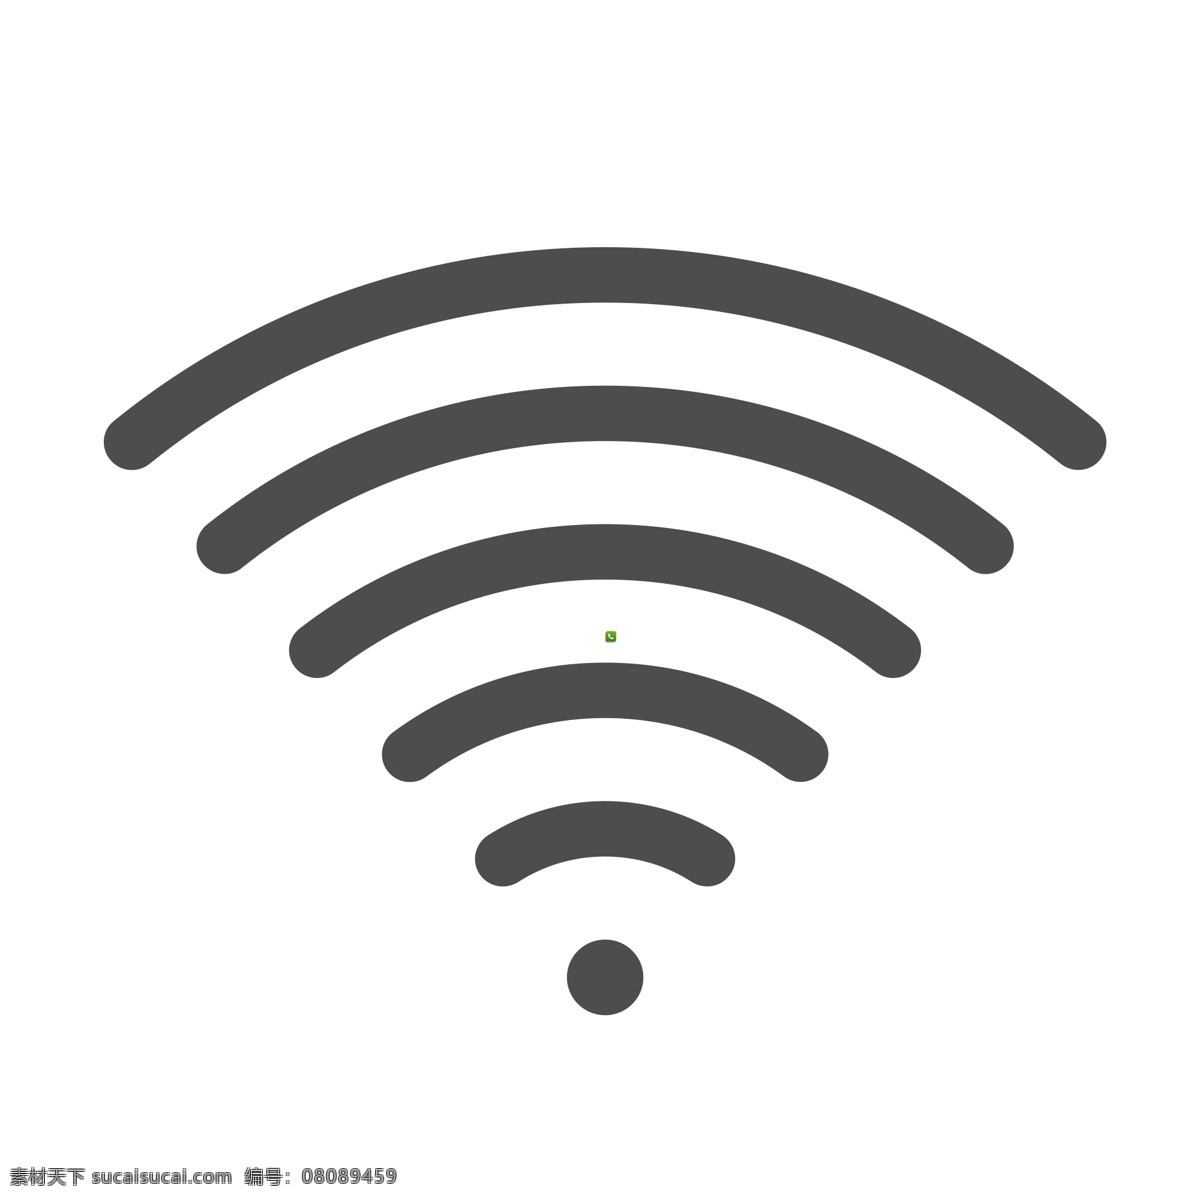 无线信号 无线图标 扁平化ui ui图标 手机图标 界面ui 网页ui h5图标